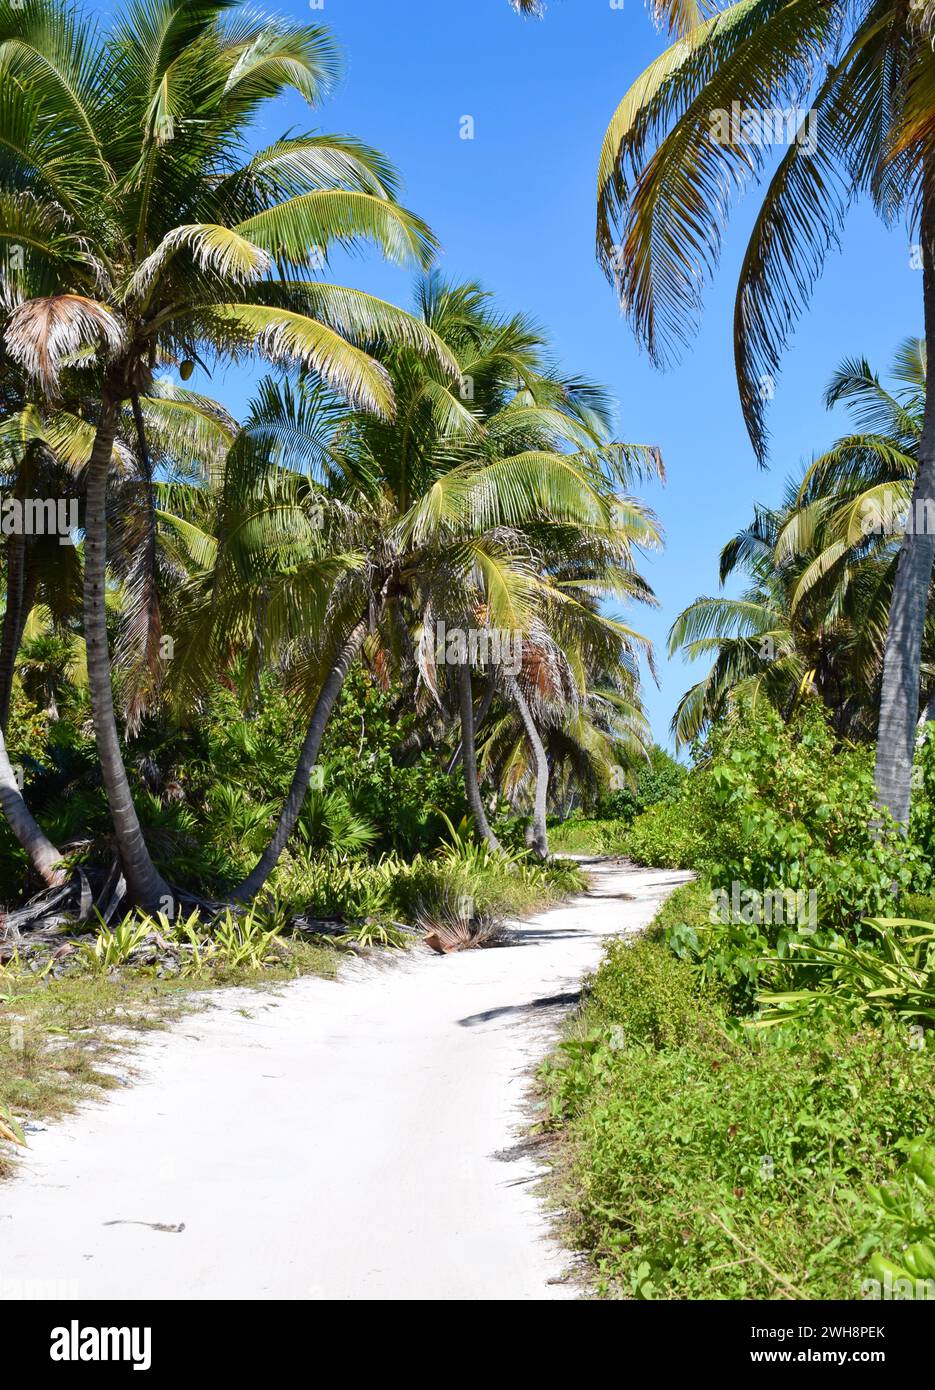 Eine sandige, unbefestigte Straße, gesäumt von Palmen im Norden von Ambergris Caye, Belize, Mittelamerika. Stockfoto